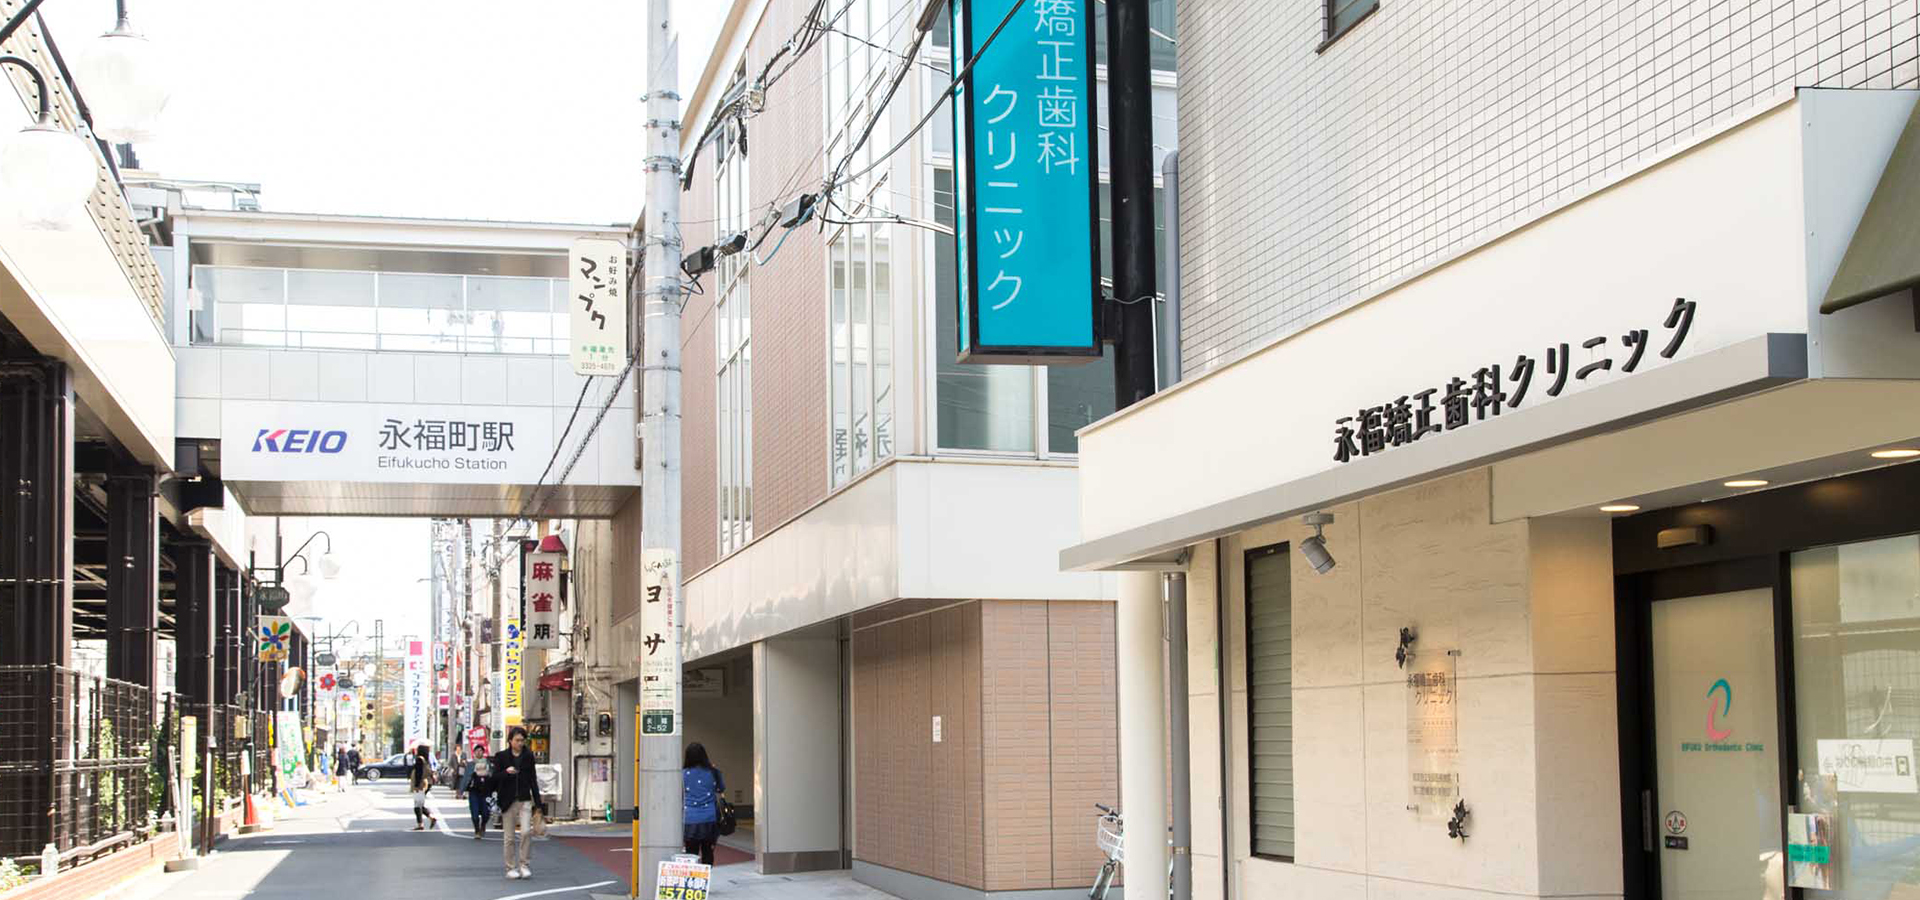 「永福町駅徒歩30秒」通院に便利なアクセス